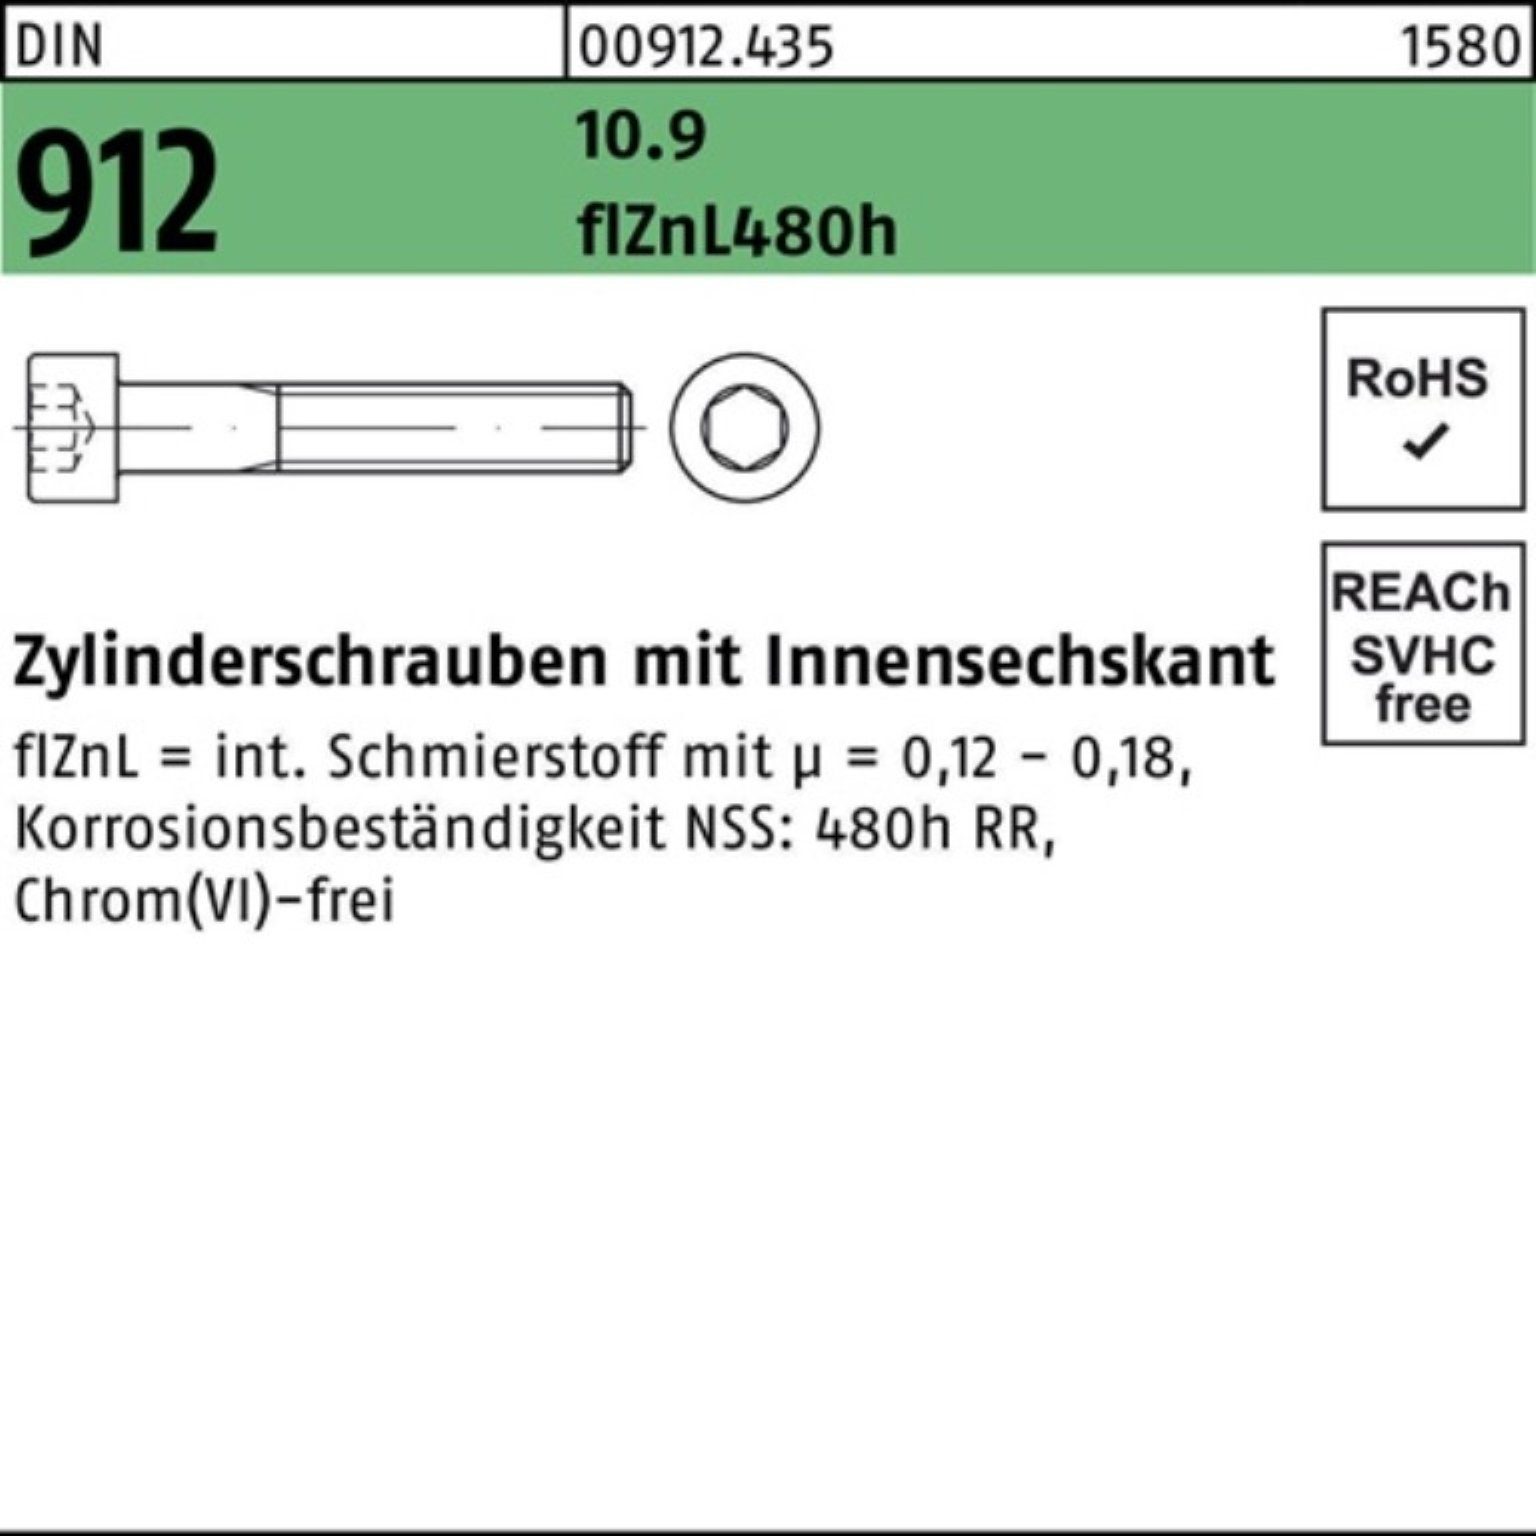 912 Zylinderschraube 10.9 DIN Pack Innen-6kt Zylinderschraube Reyher flZnL/nc/x/x M10x80 100er